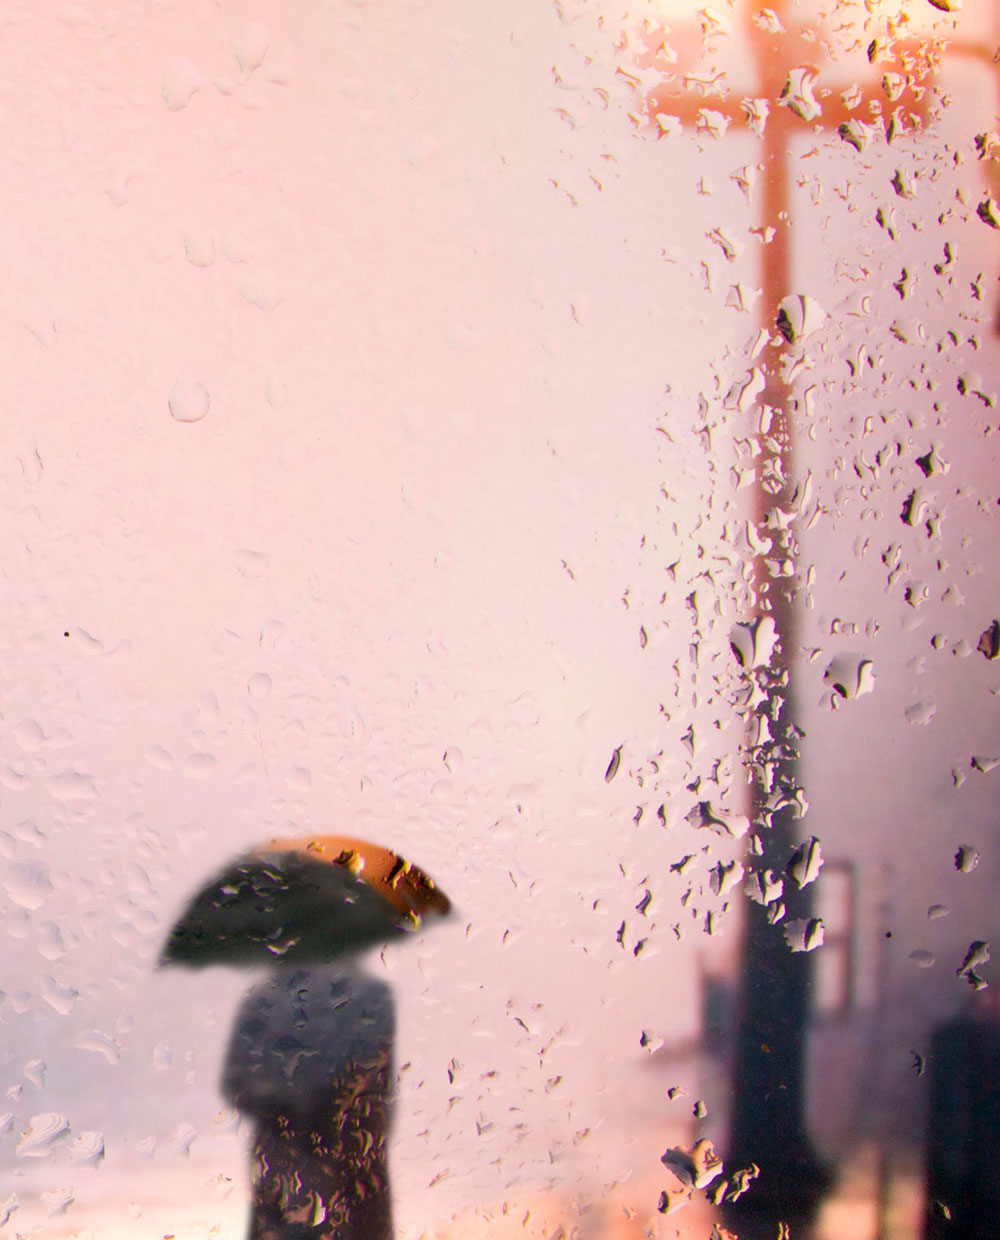 Raining man